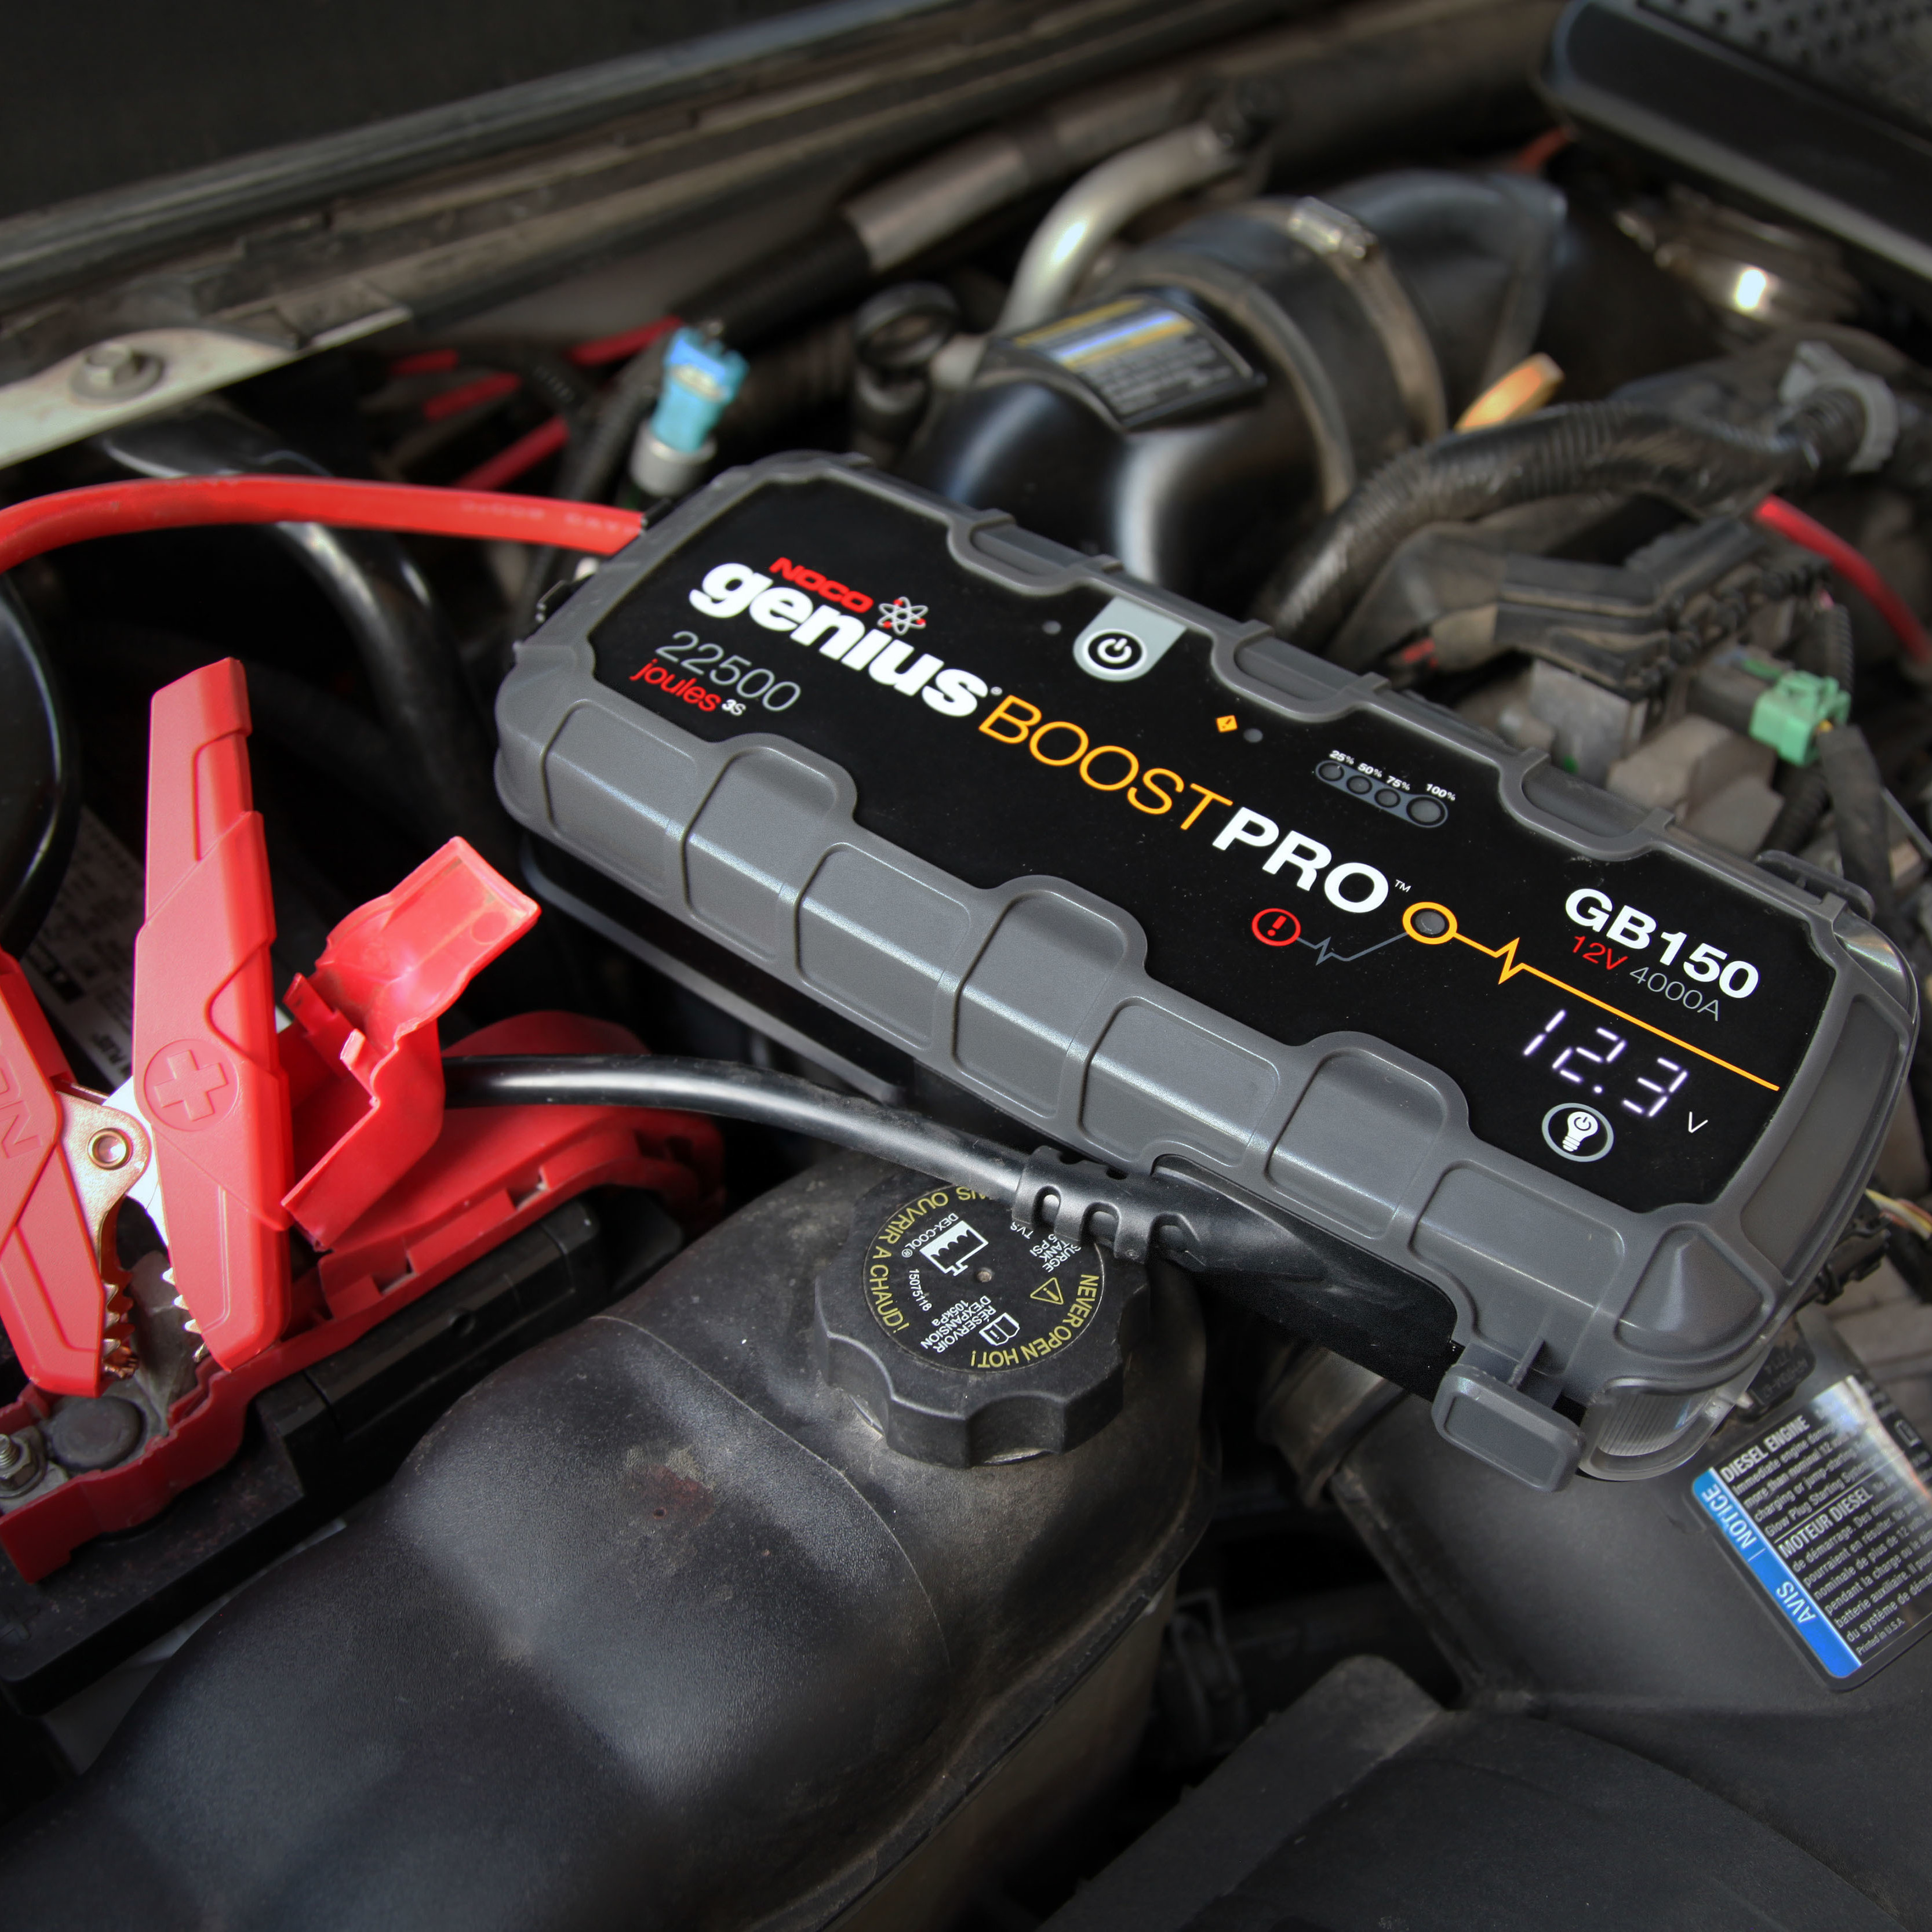 Powerbank Starthilfe - wir testen das Autobatterie Ladegerät! 